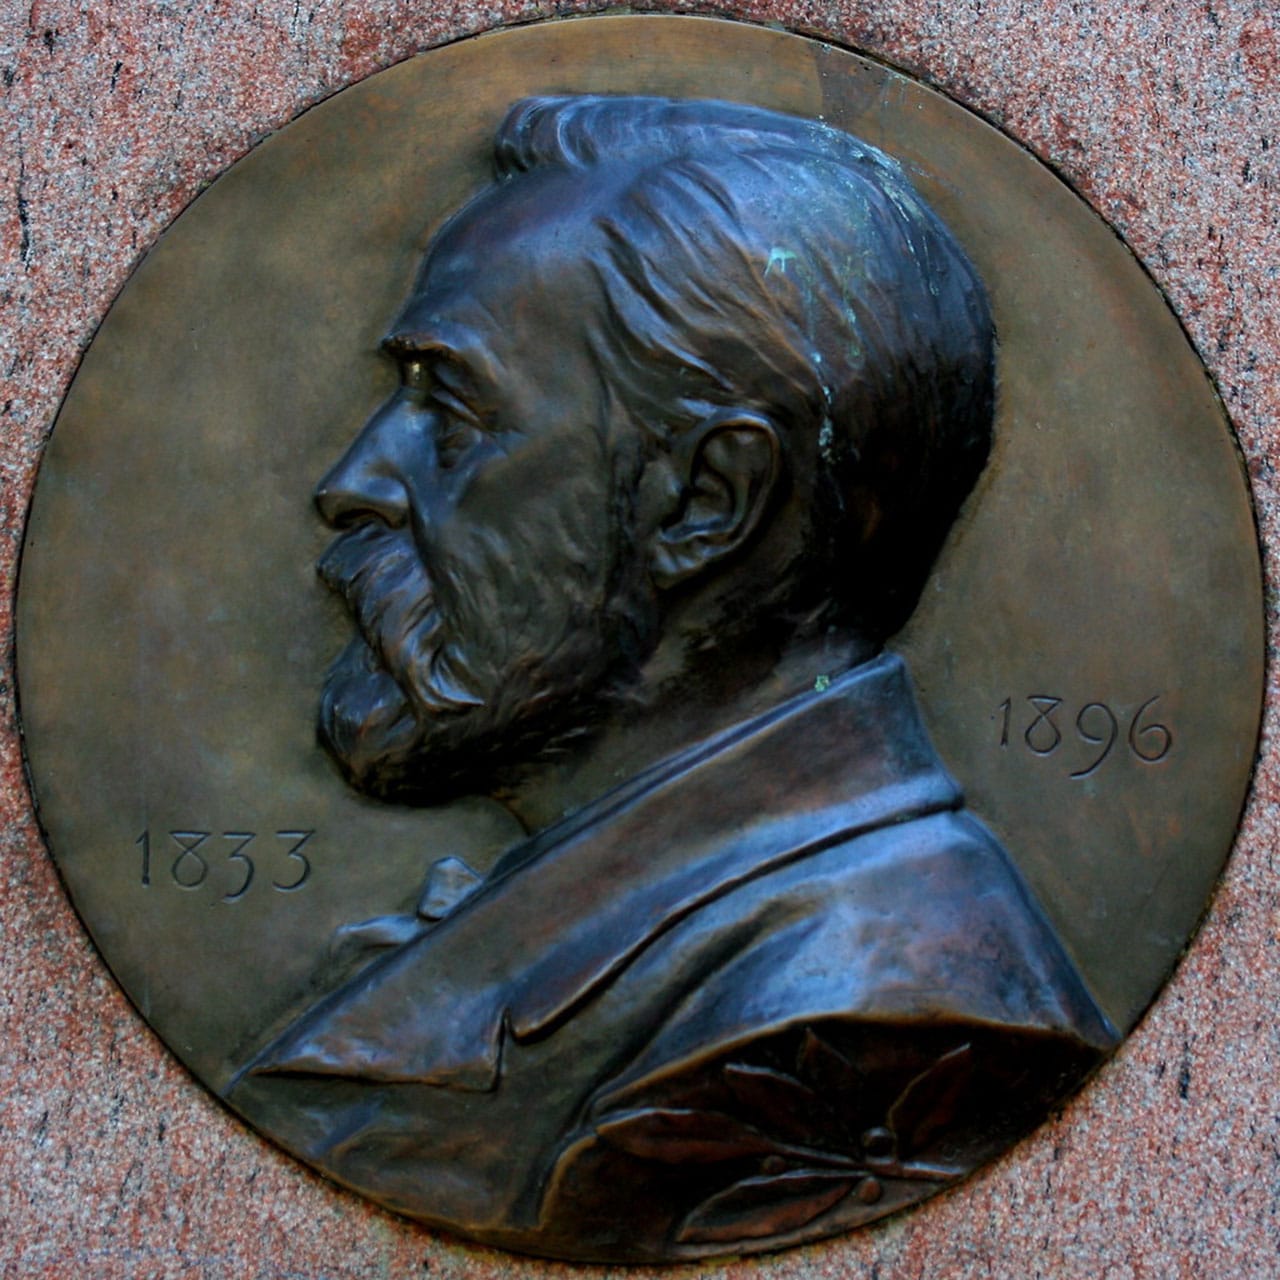 Alfred Nobel: Creador del Premio nobel y sus aportaciones